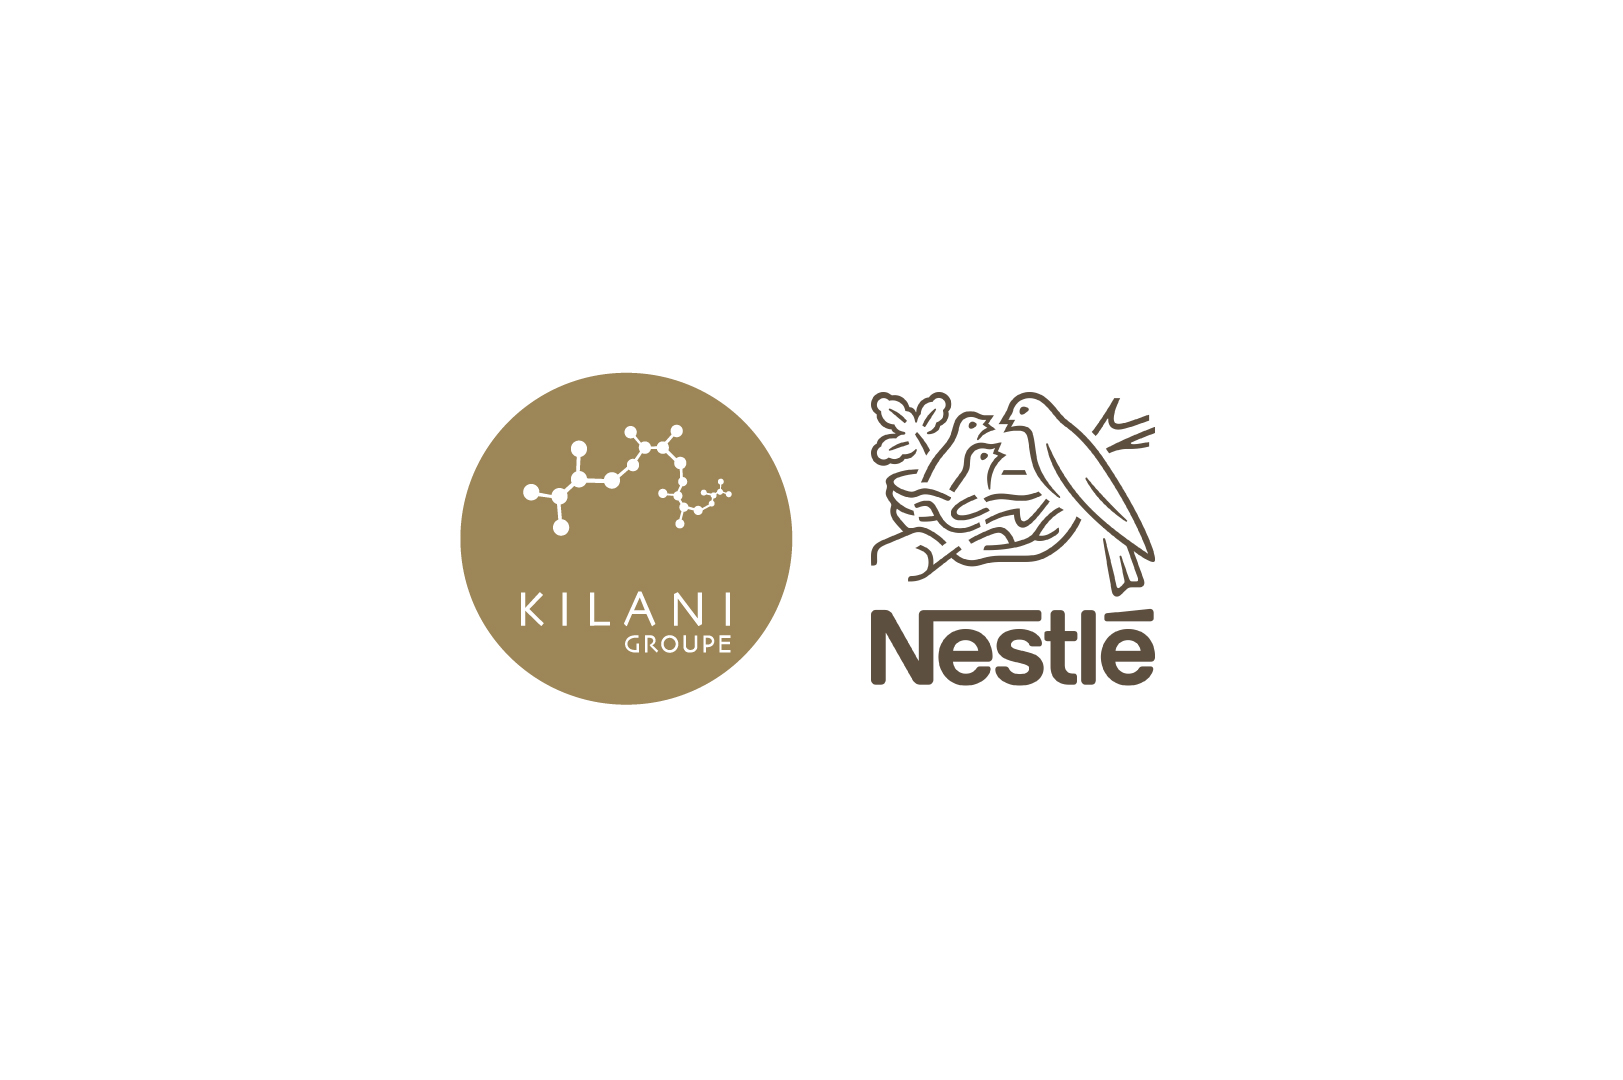 Le Groupe Kilani développe ses activités dans le secteur de l’agro-alimentaire en partenariat avec Nestlé